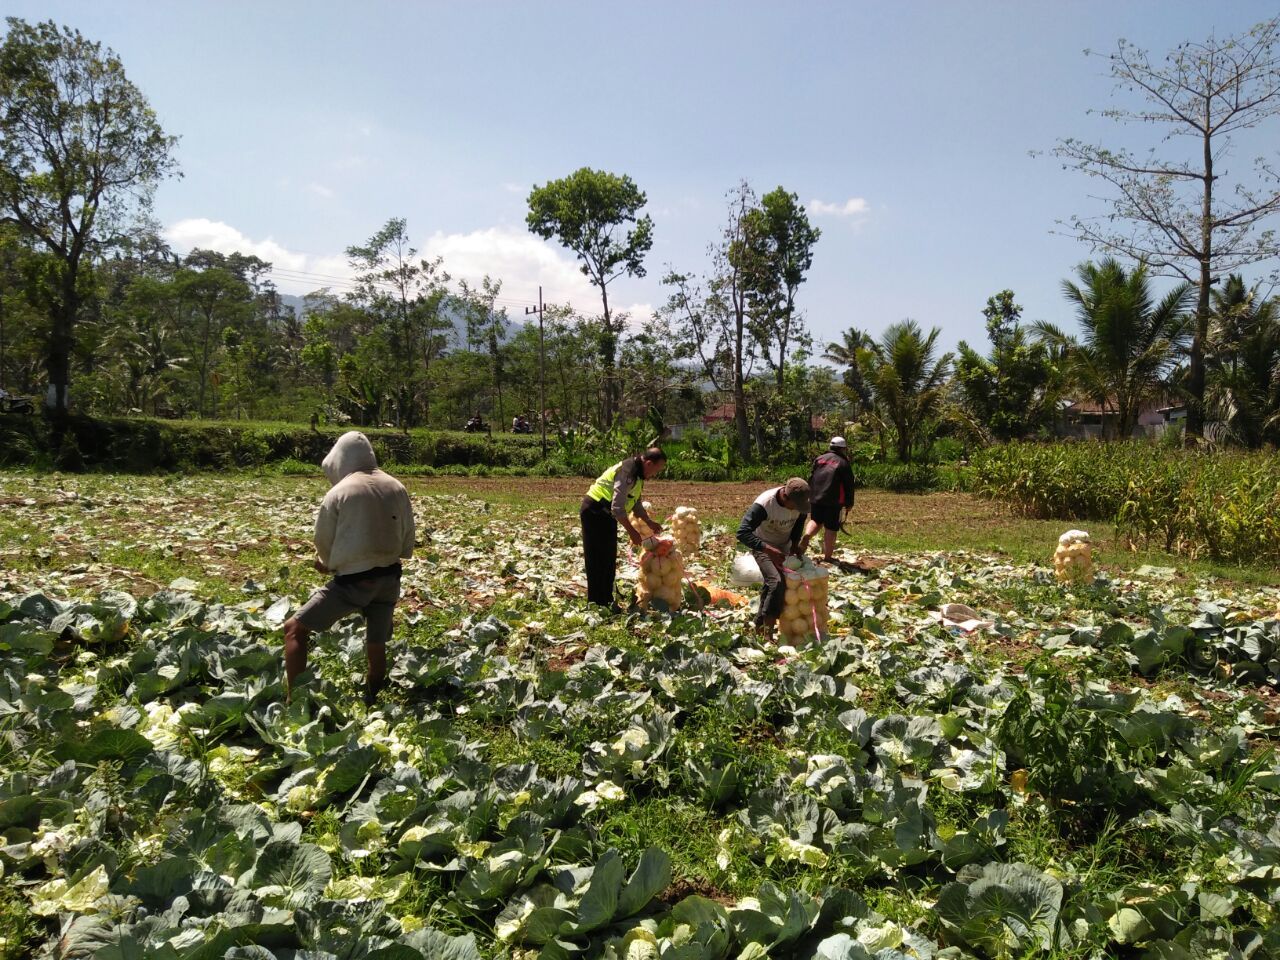 Bhabinkamtibmas Desa Waturejo Polres Batu Berpartisipasi Membantu Petani Panen Sayur di Sawah